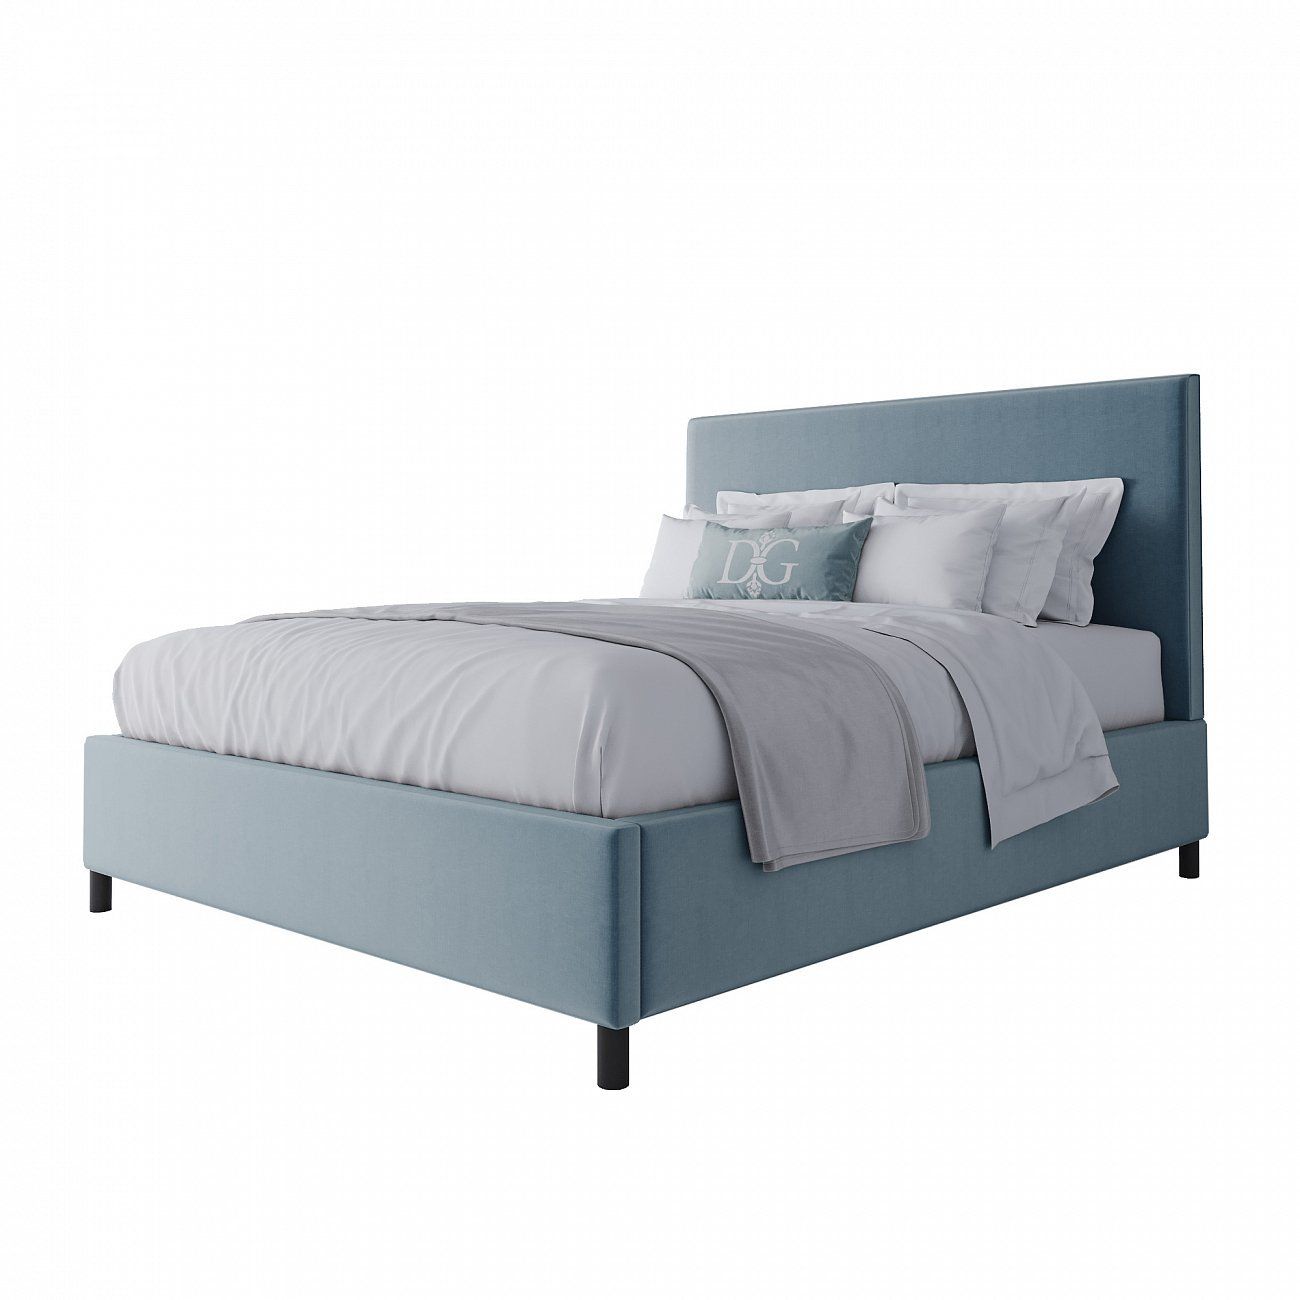 Кровать двуспальная 160х200 голубая Novac Platform